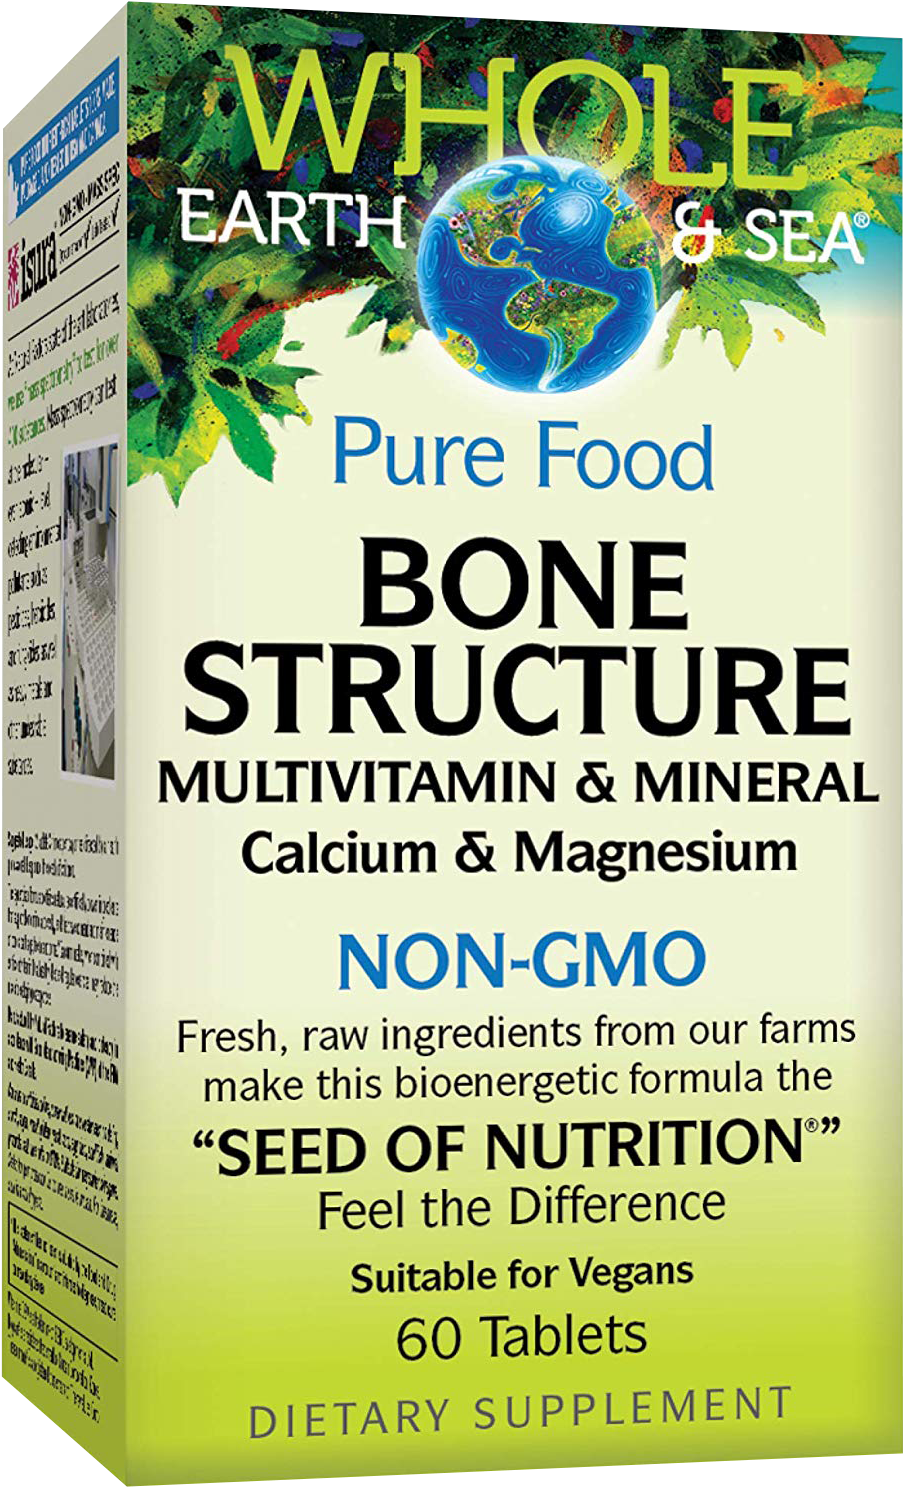 Bone Structure NON-GMO - BadiZdrav.BG